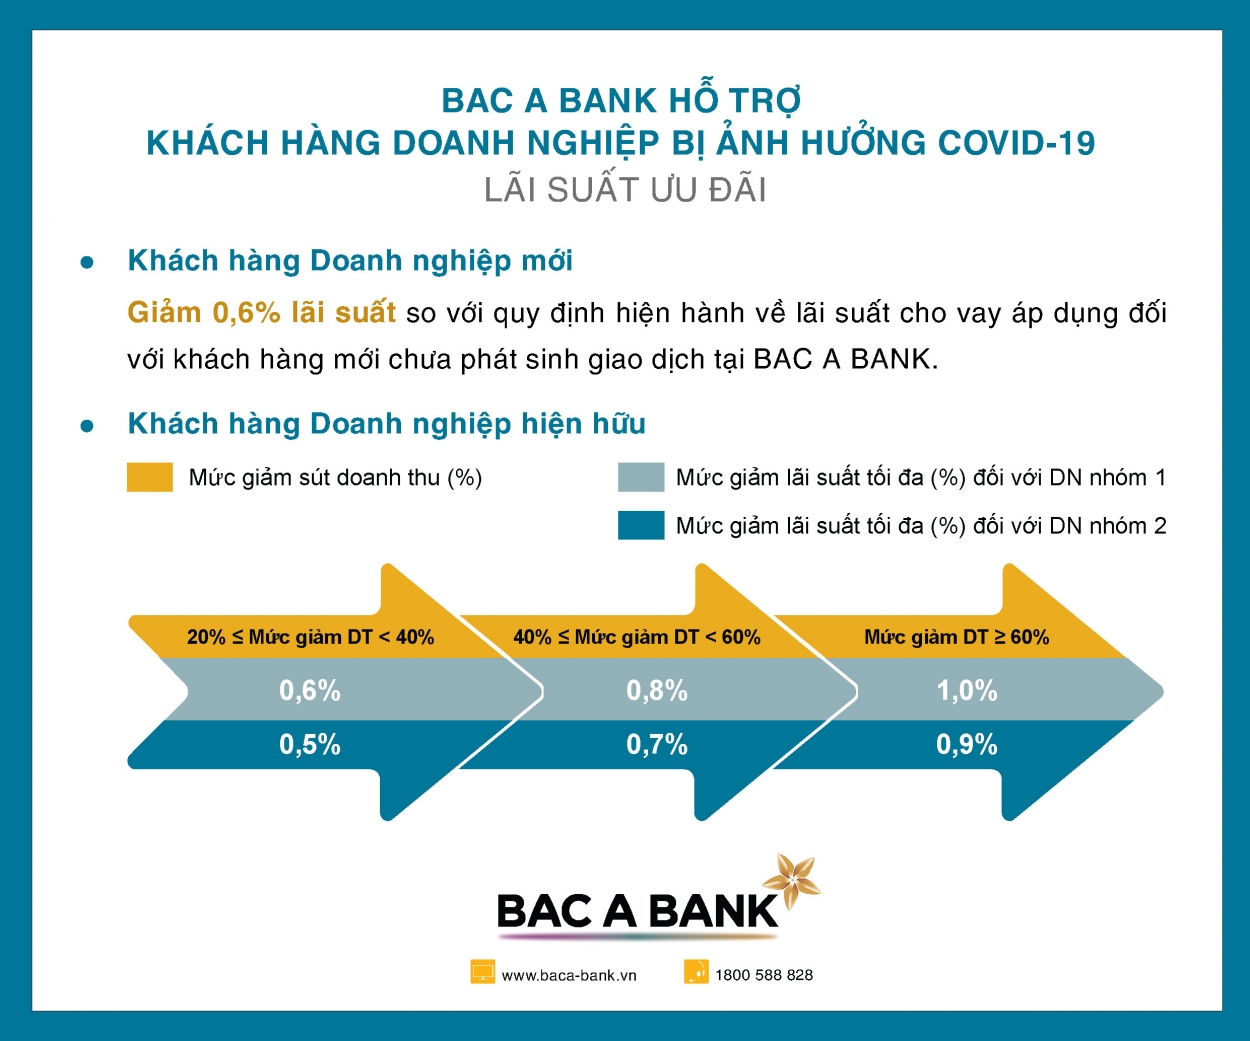 BAC A BANK hỗ trợ doanh nghiệp bị ảnh hưởng bởi Covid-19